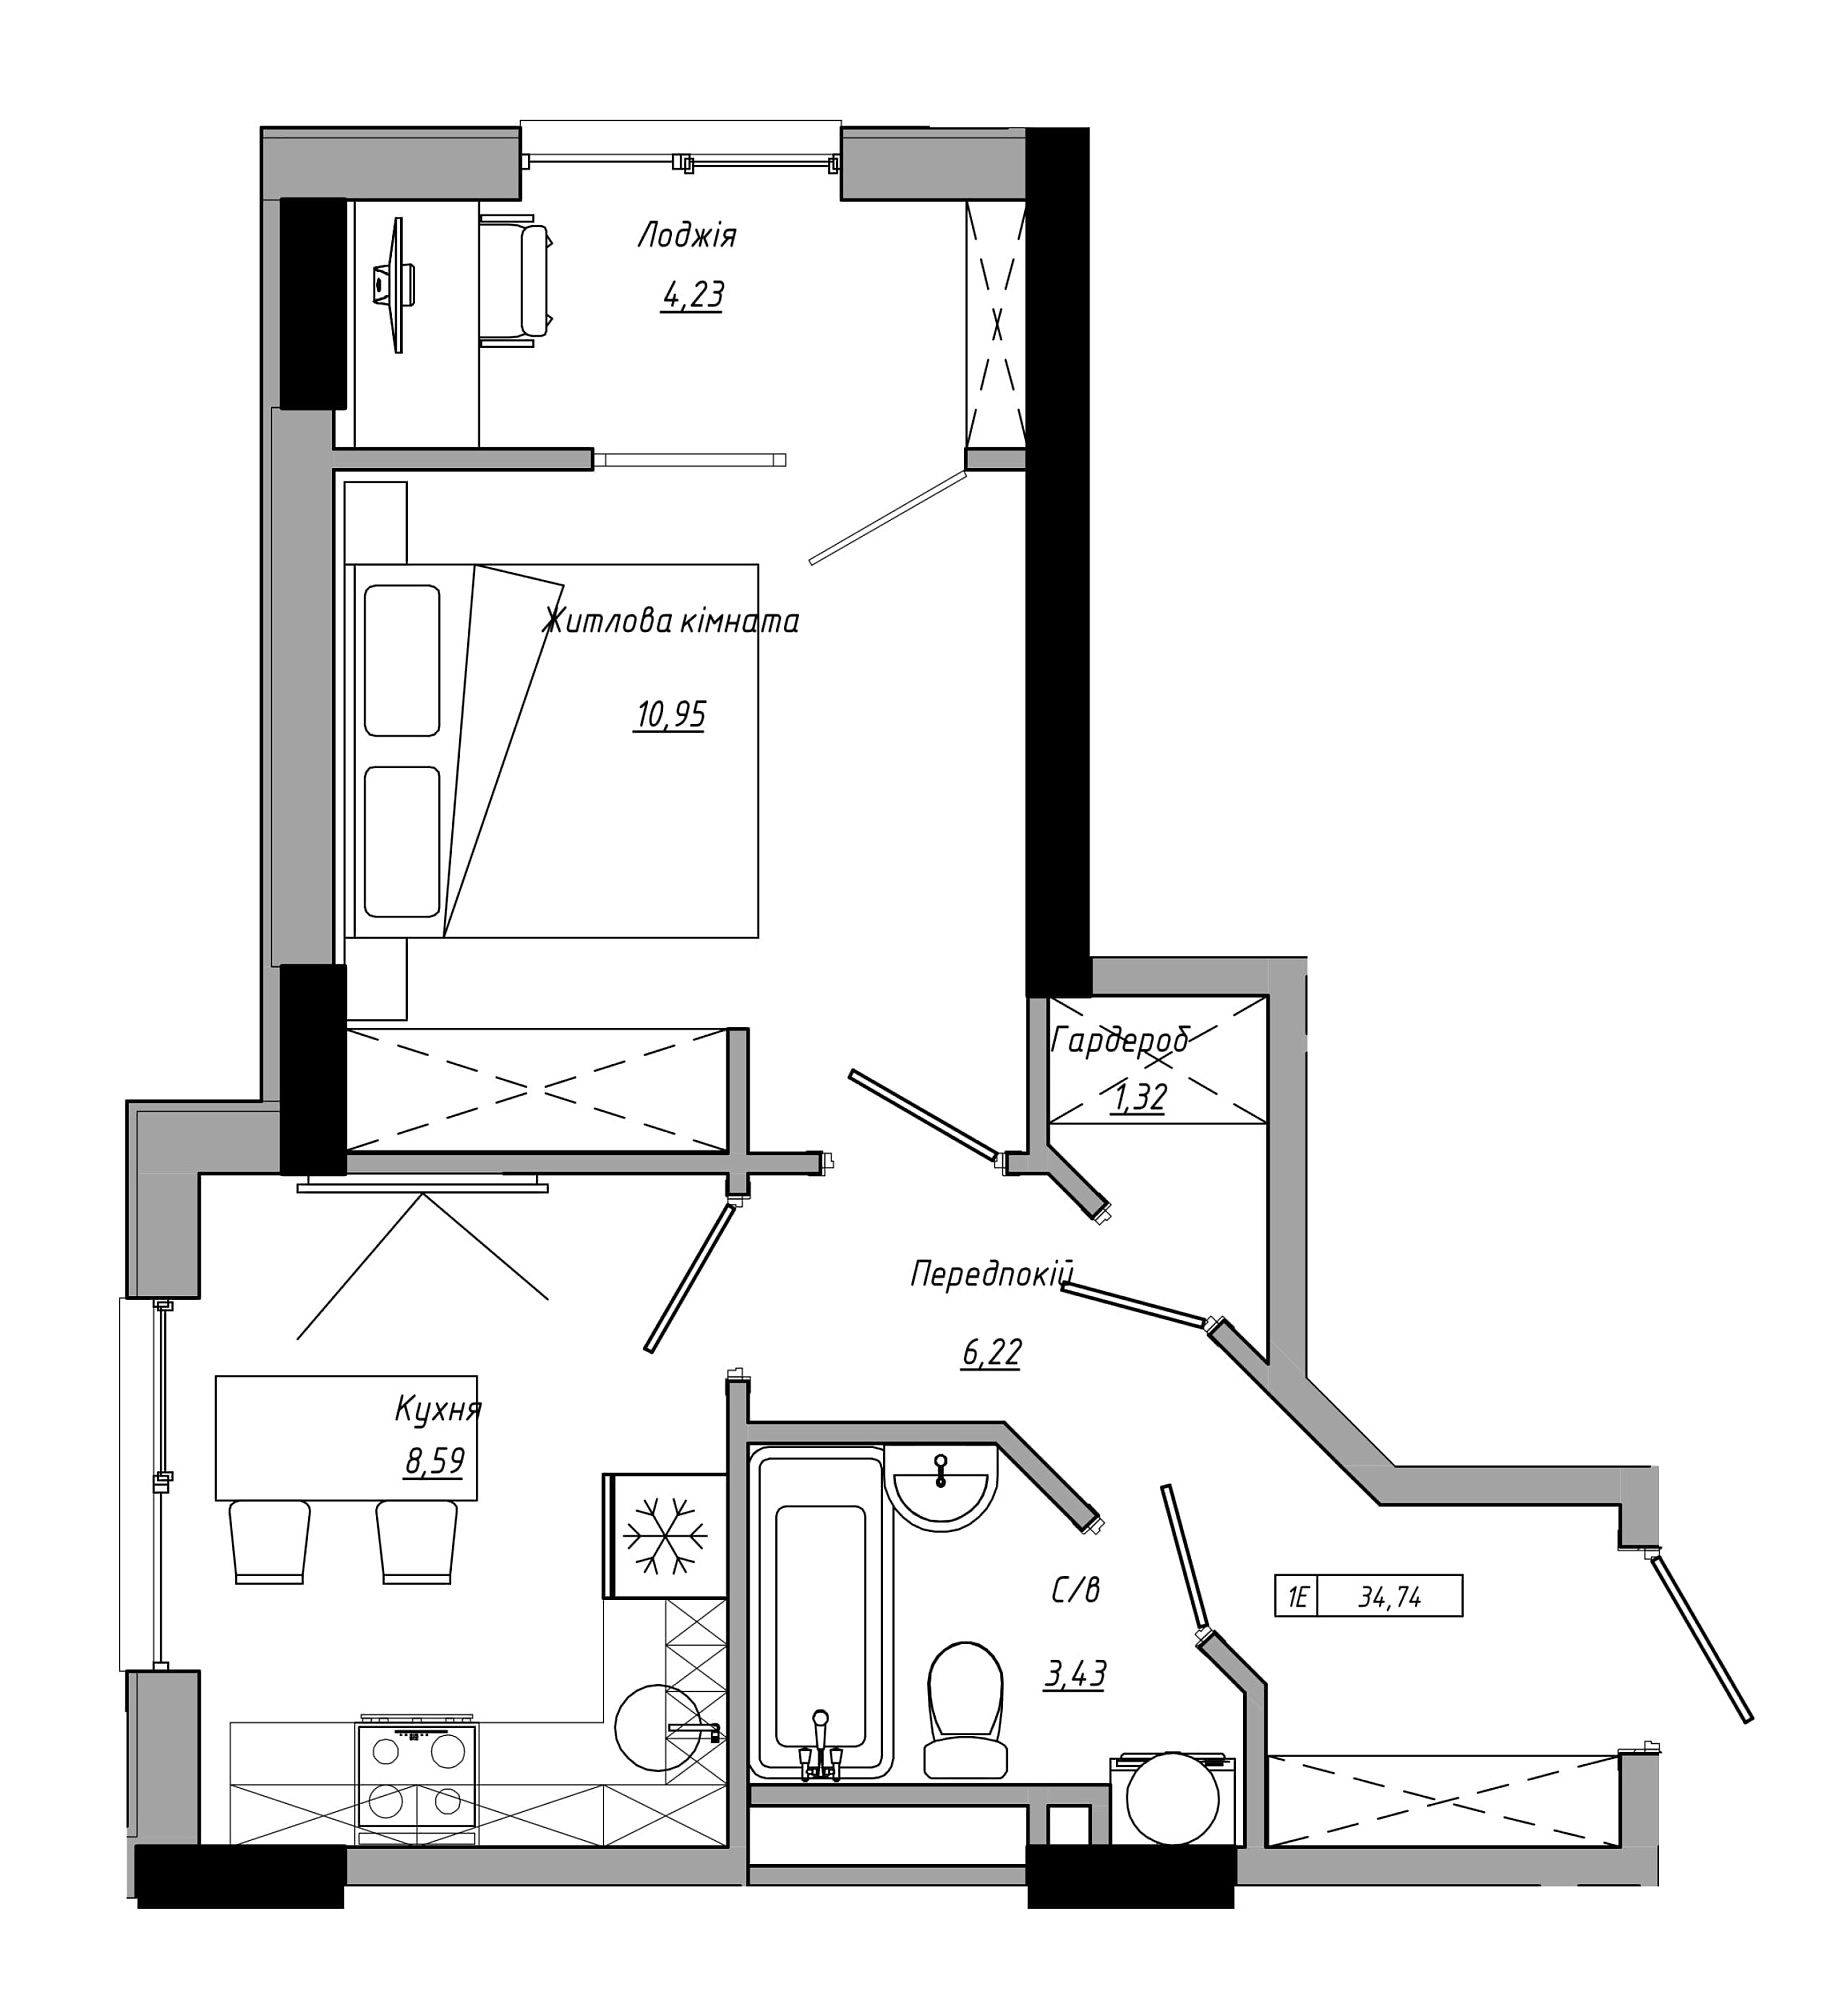 Планировка 1-к квартира площей 34.74м2, AB-21-14/00109.